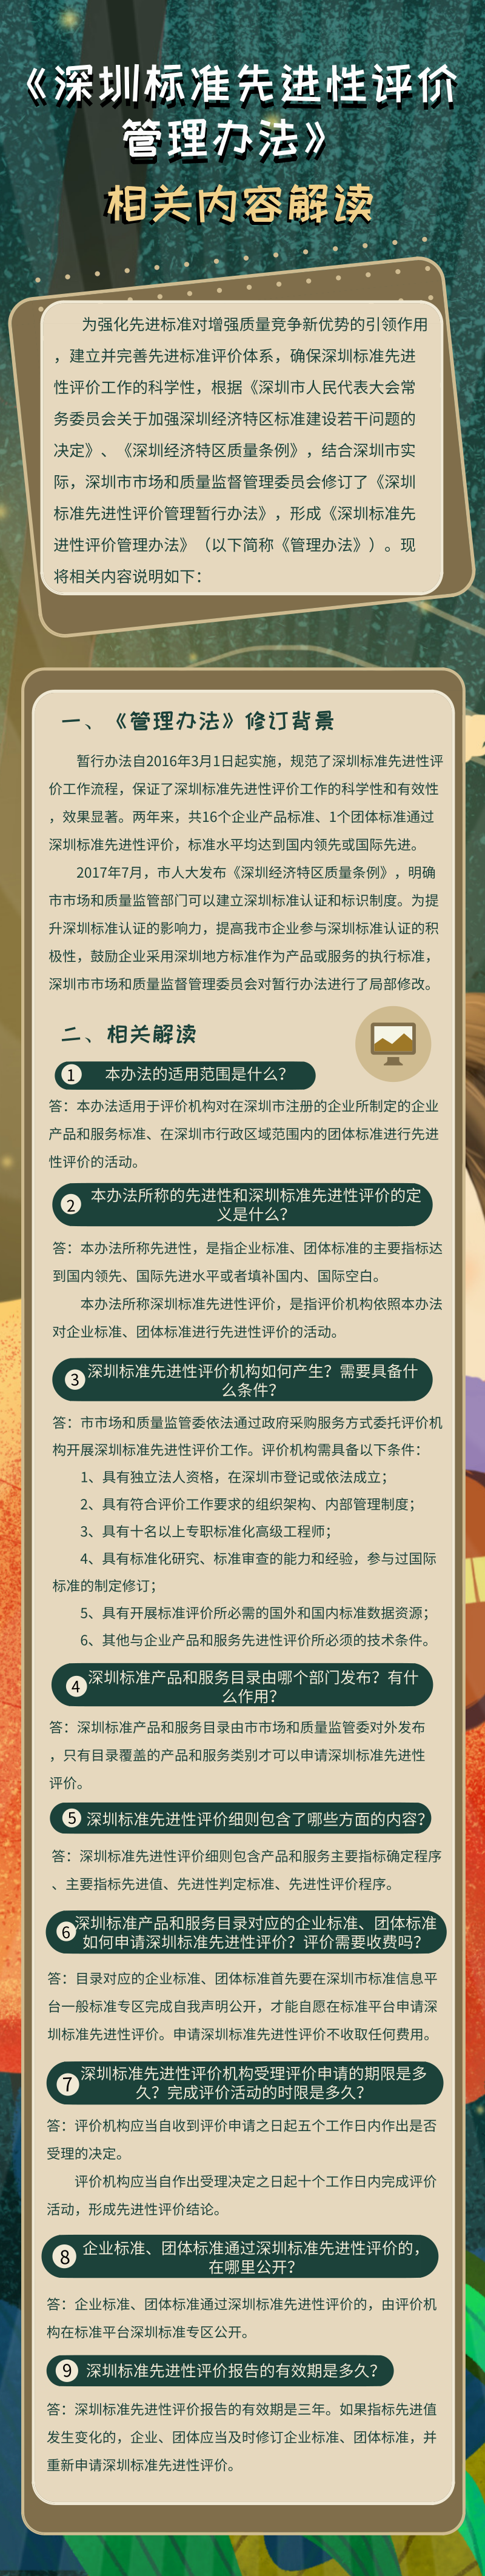 深圳标准先进性评价管理办法.png